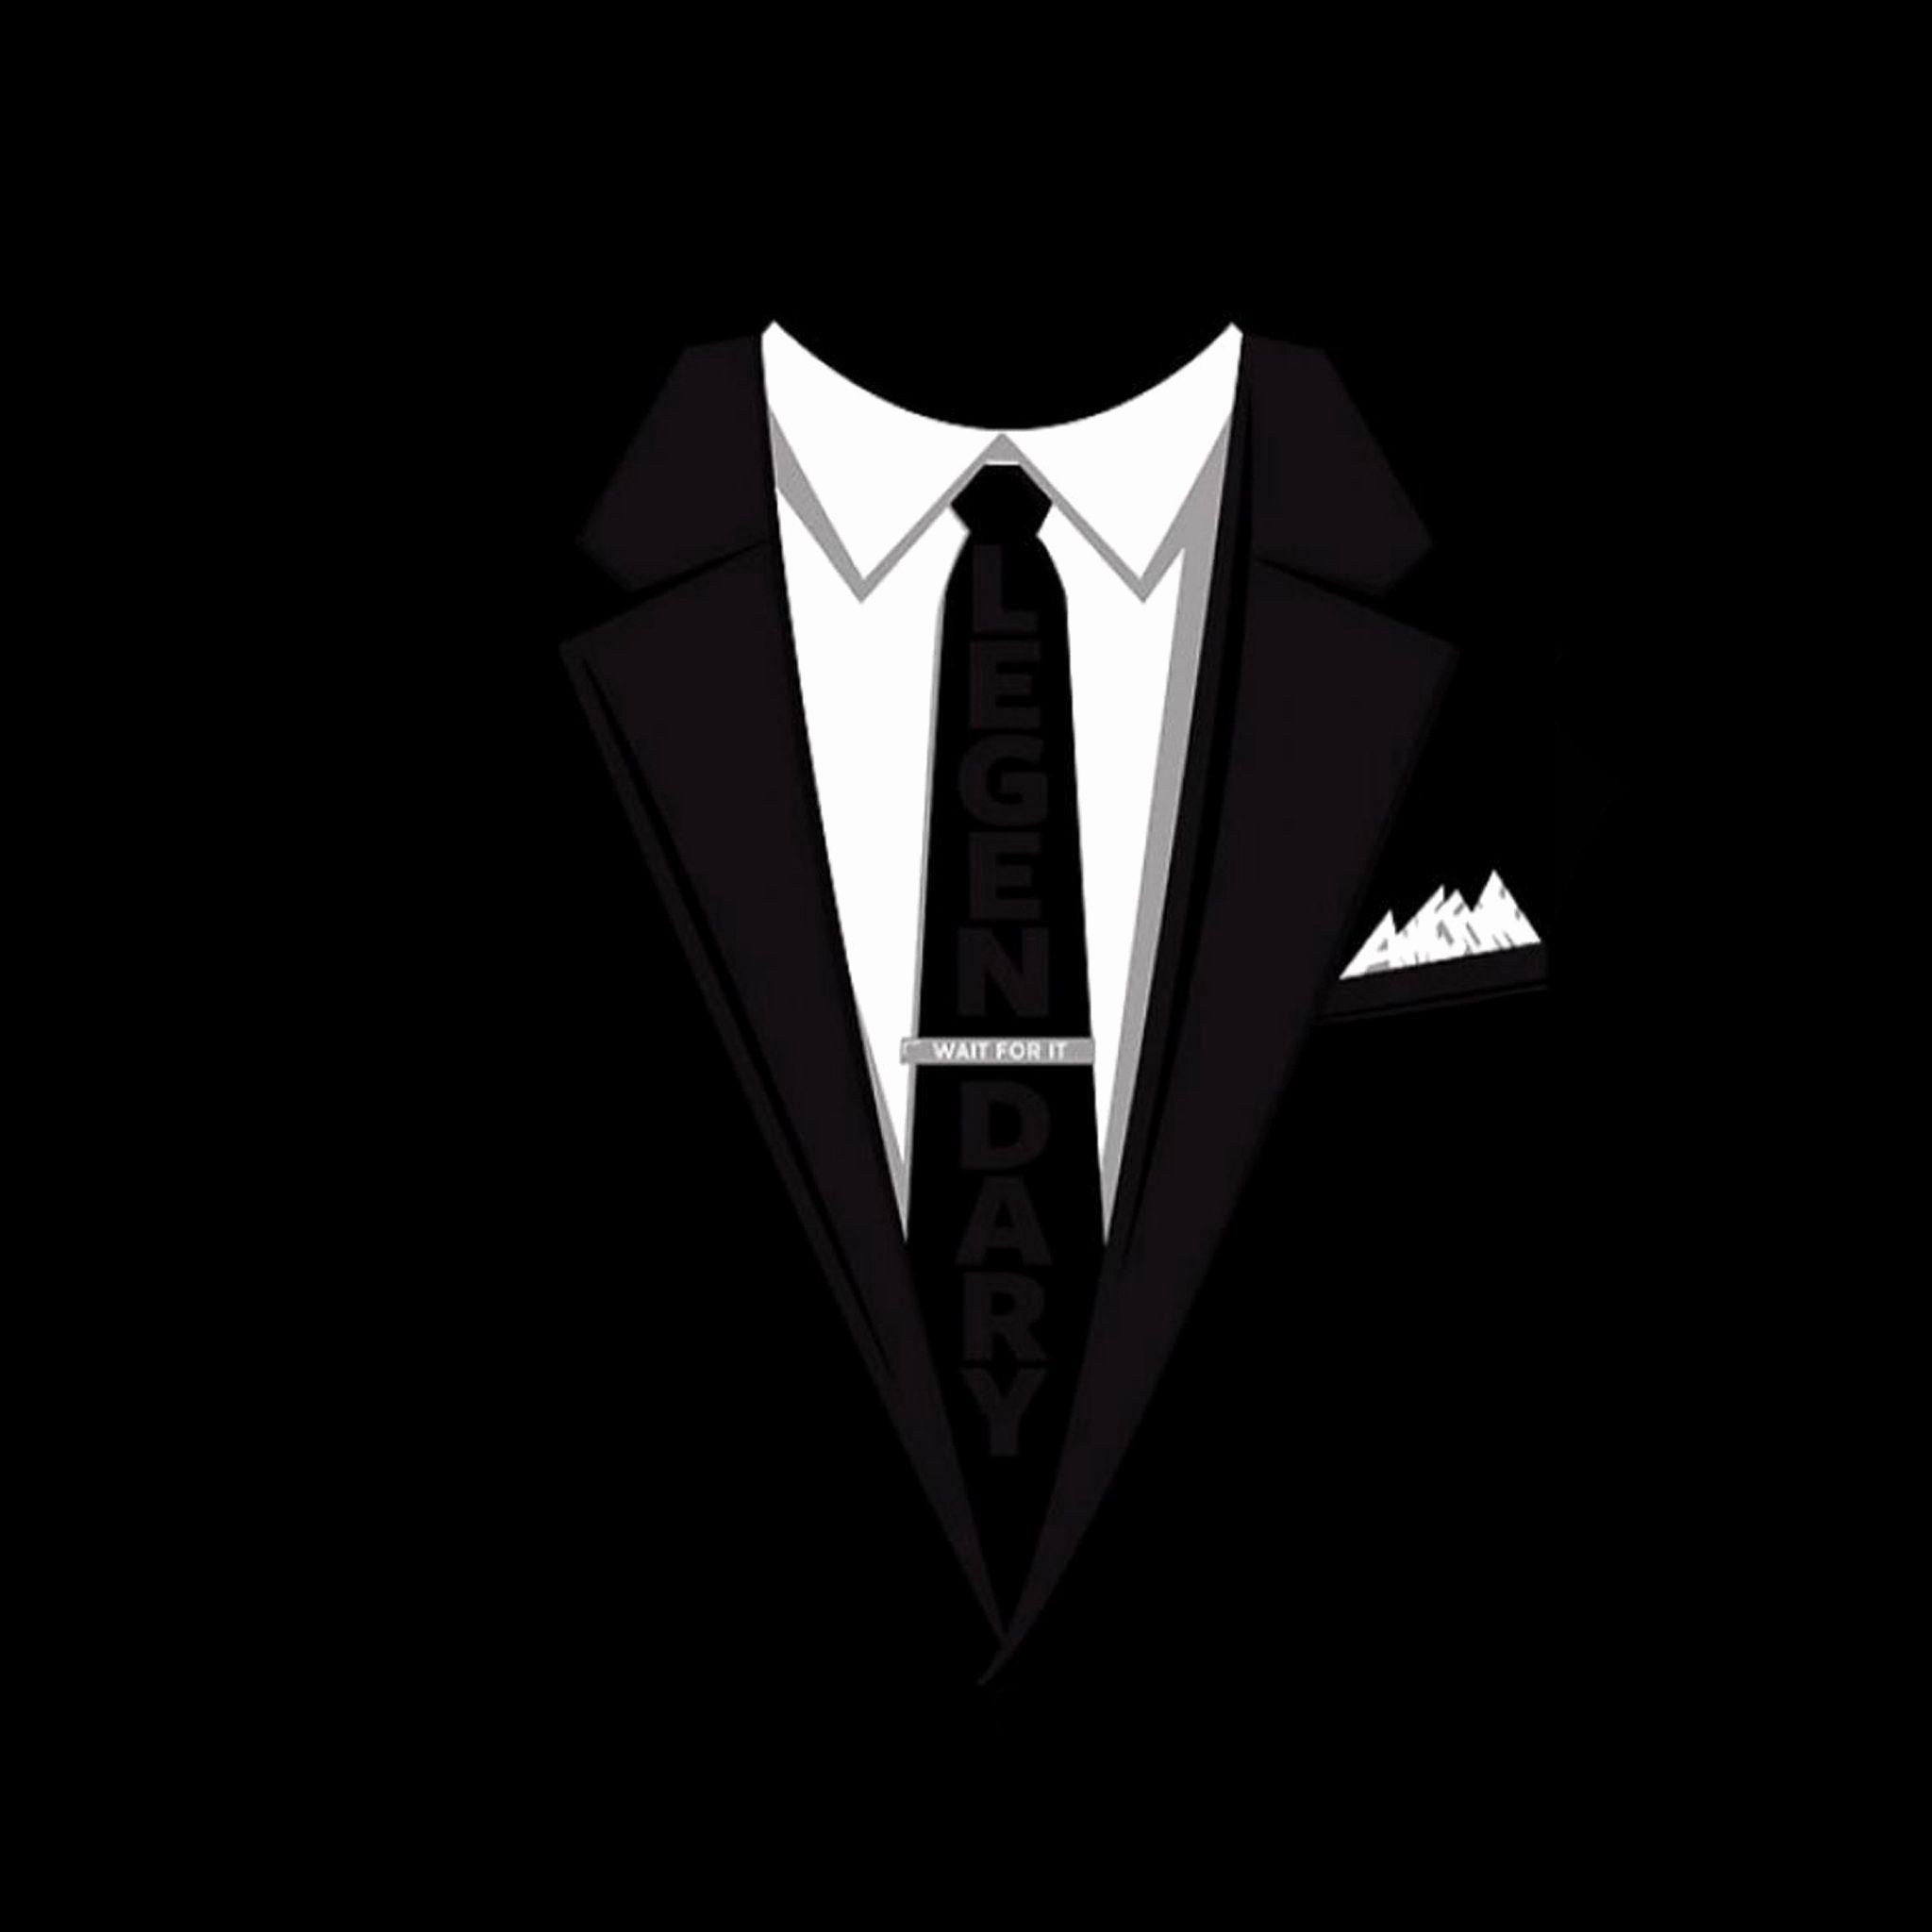 Черная аватарка телеграмма. Пиджак с галстуком. Черный пиджак с галстуком. Костюм с галстуком. Аватар в строгом черном костюме.